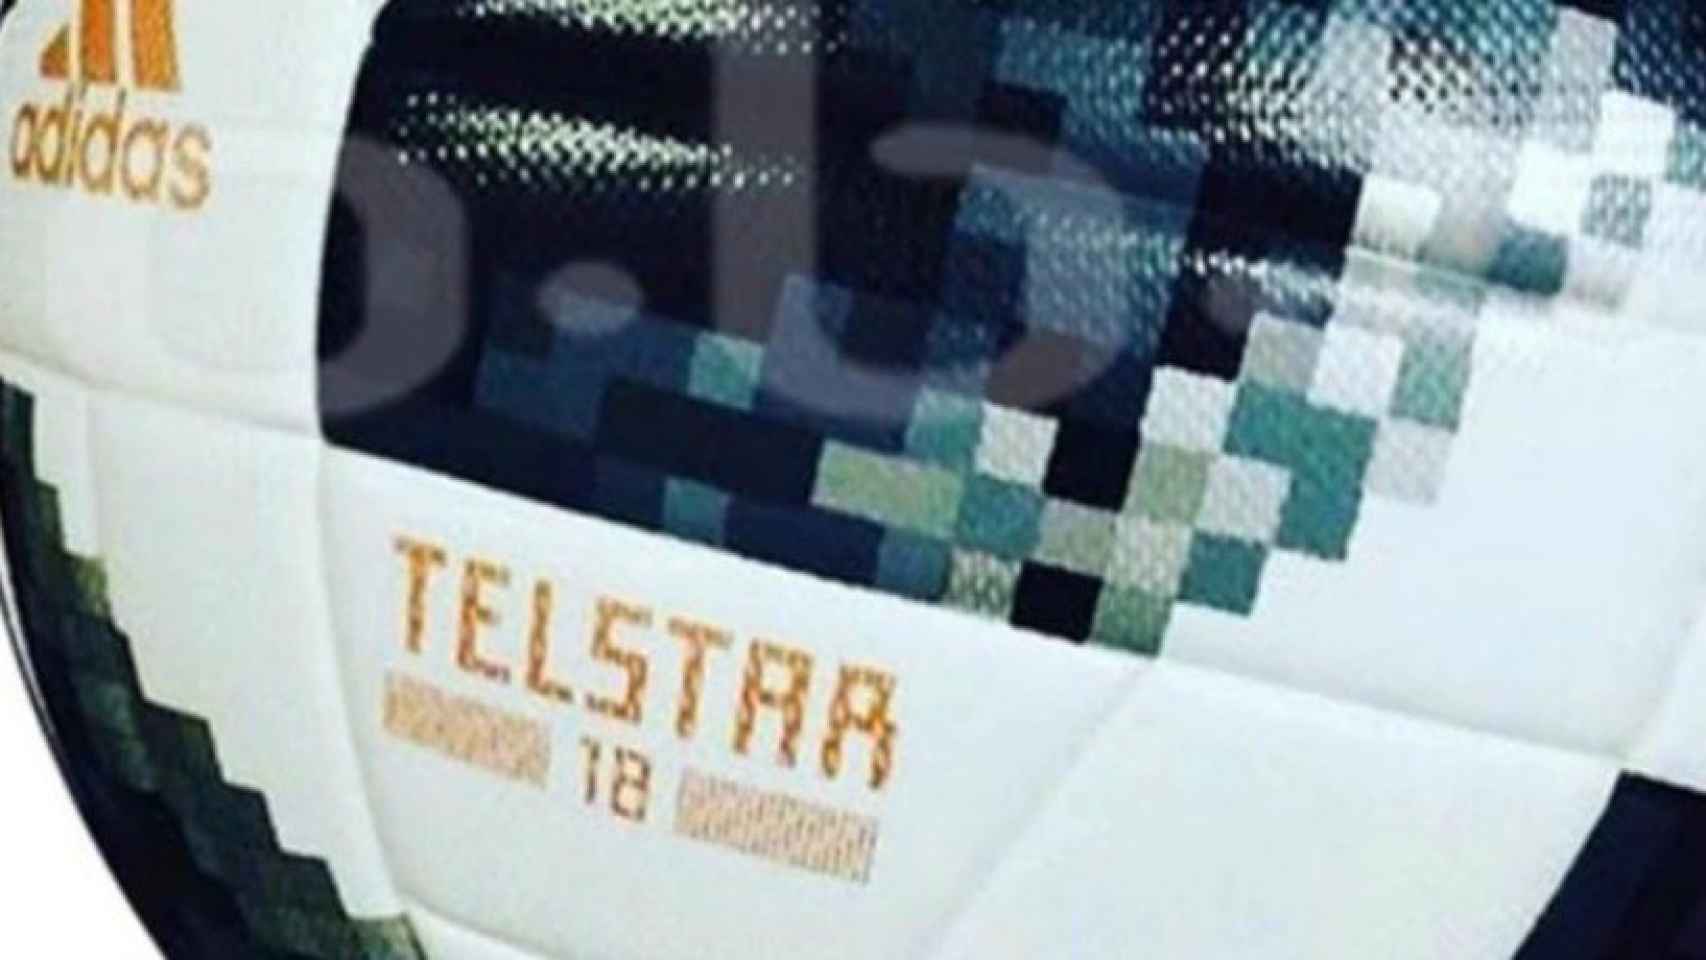 Detalle del Adidas Telstar, balón que se usará en el Mundial de Rusia 2018 | Foto: footyheadlines.com